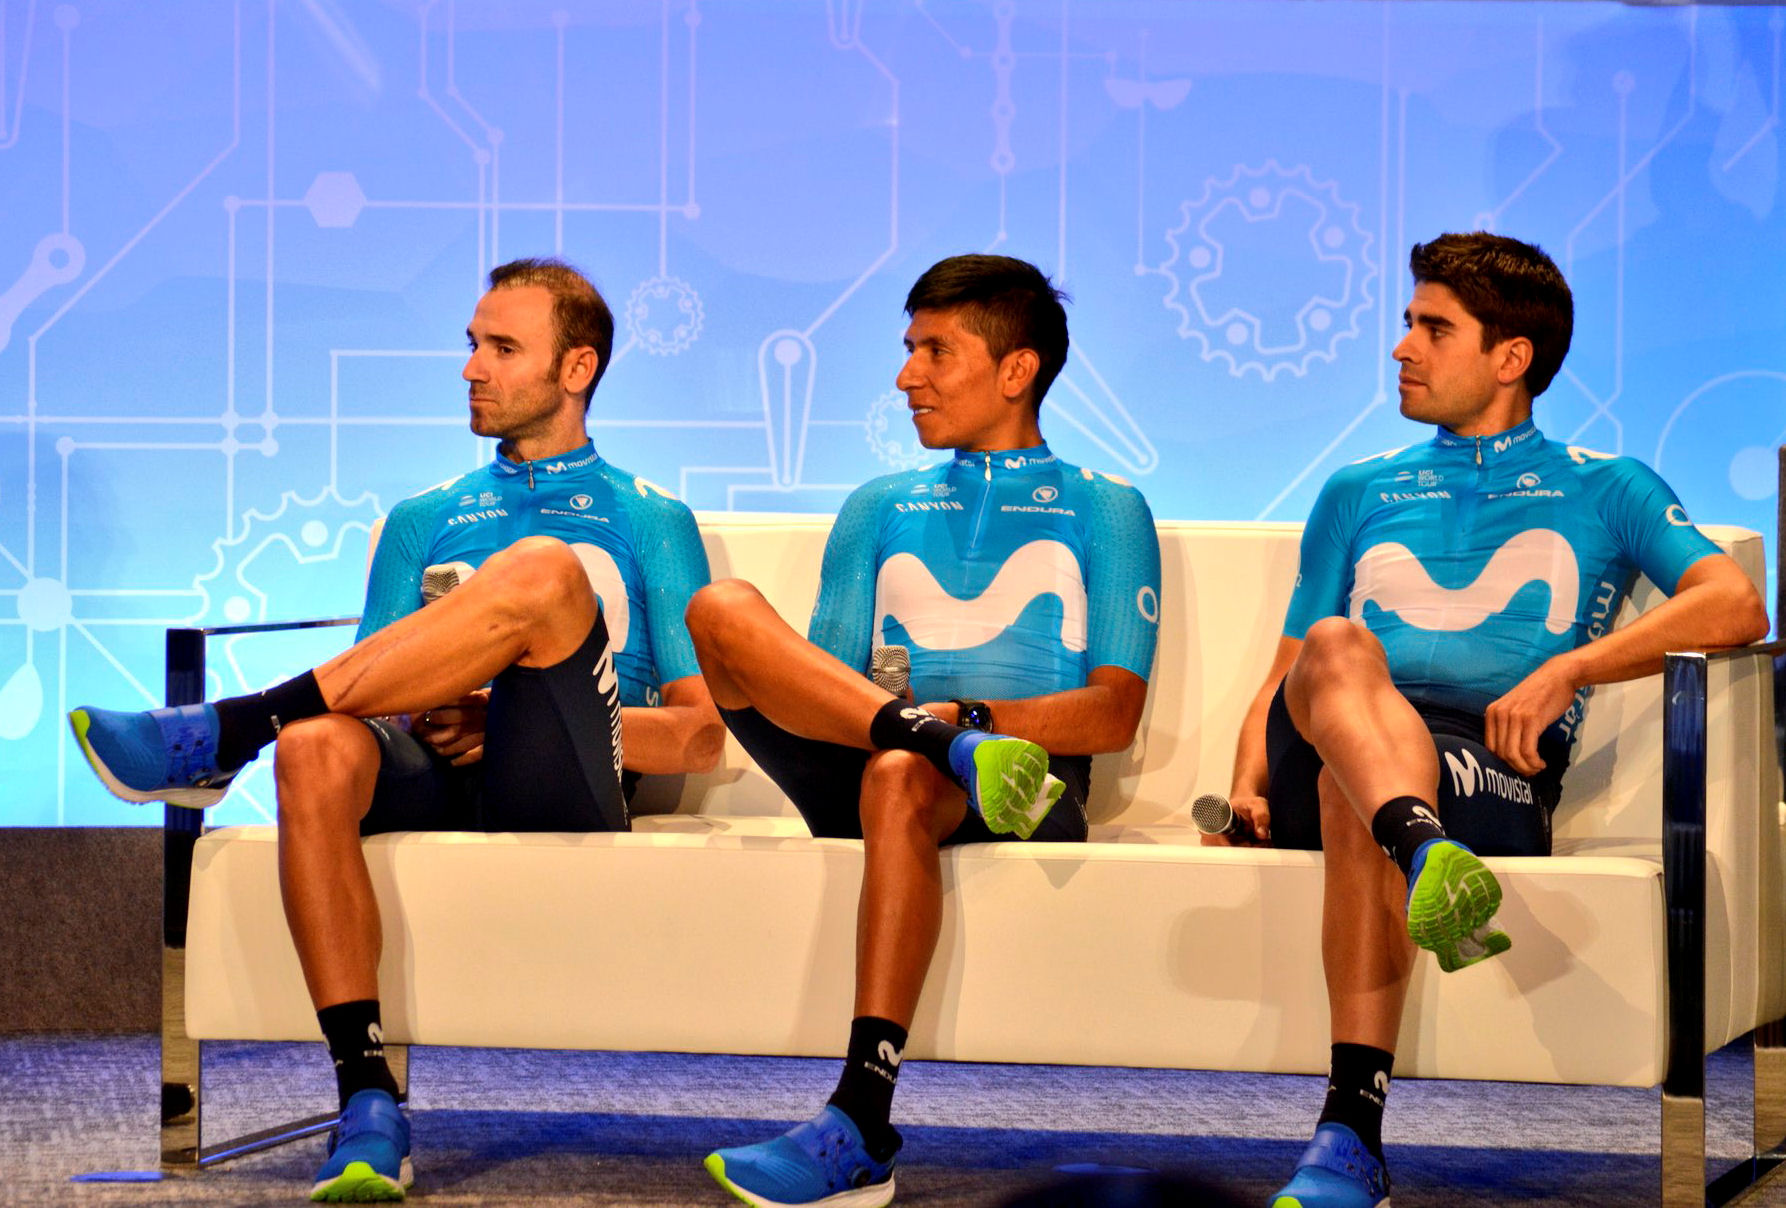 na kanapie od lewej: Valverde, Quintana, Landa